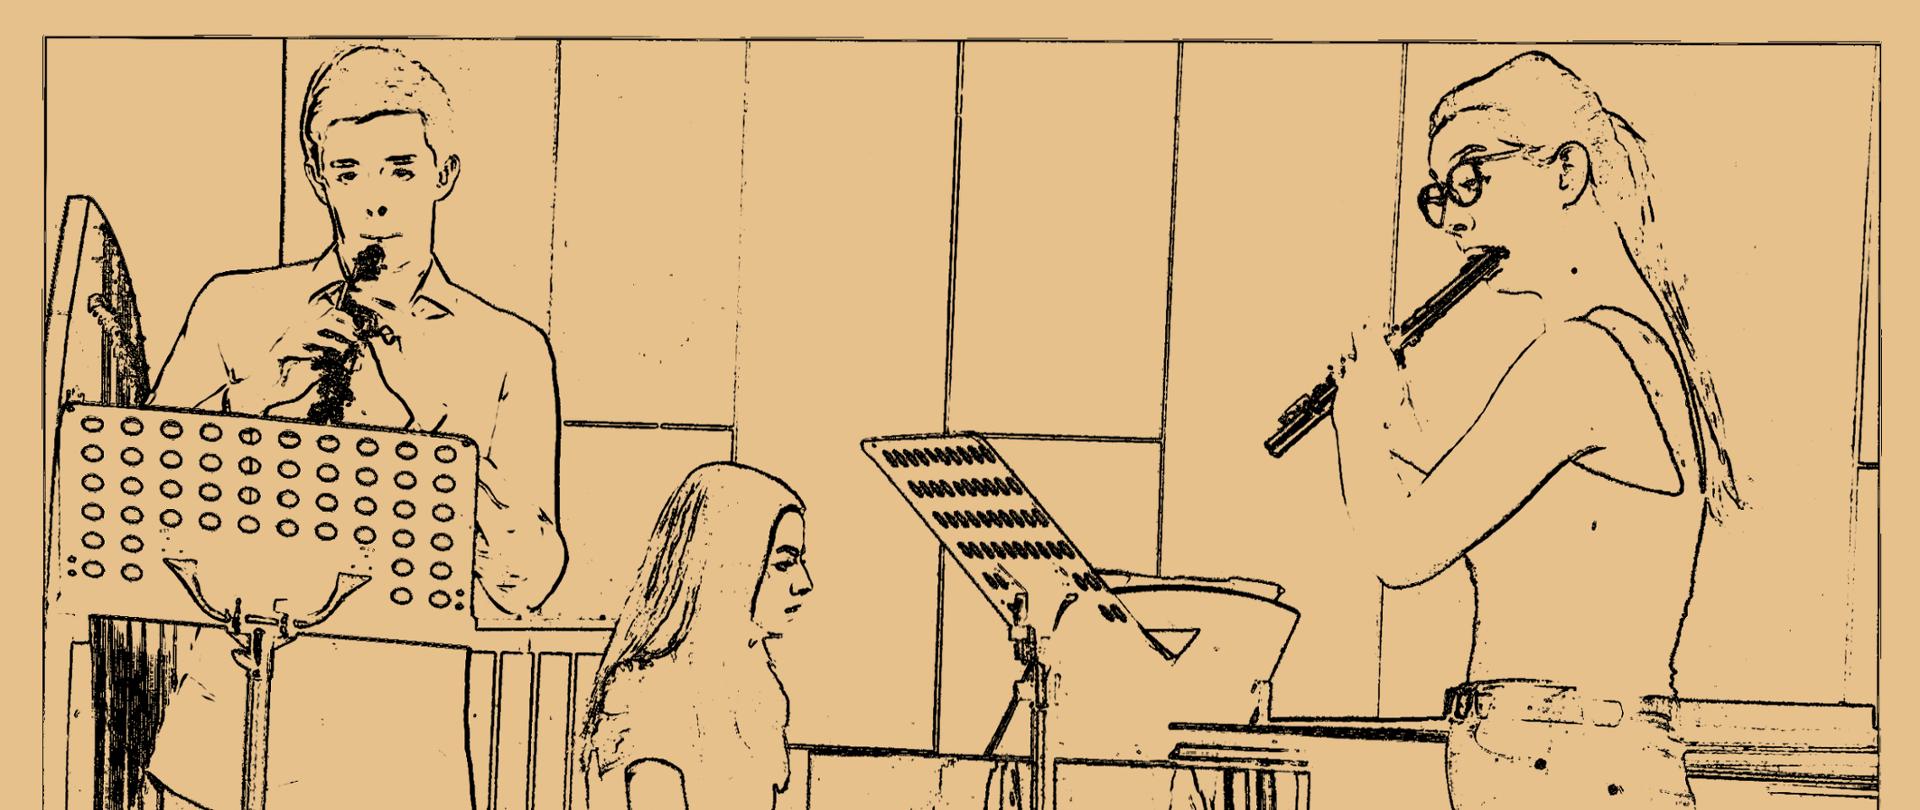 Grafika przedstawia plakat koncertowy z delikatnie żółtym tłem, u góry napis: Sekcja instrumentów dętych, akordeonu, perkusji i śpiewu solowego pod spodem bordowy duży tekst: koncert zespołów kameralnych, po środku szkic zespołu trio, obój, fortepian i flet.